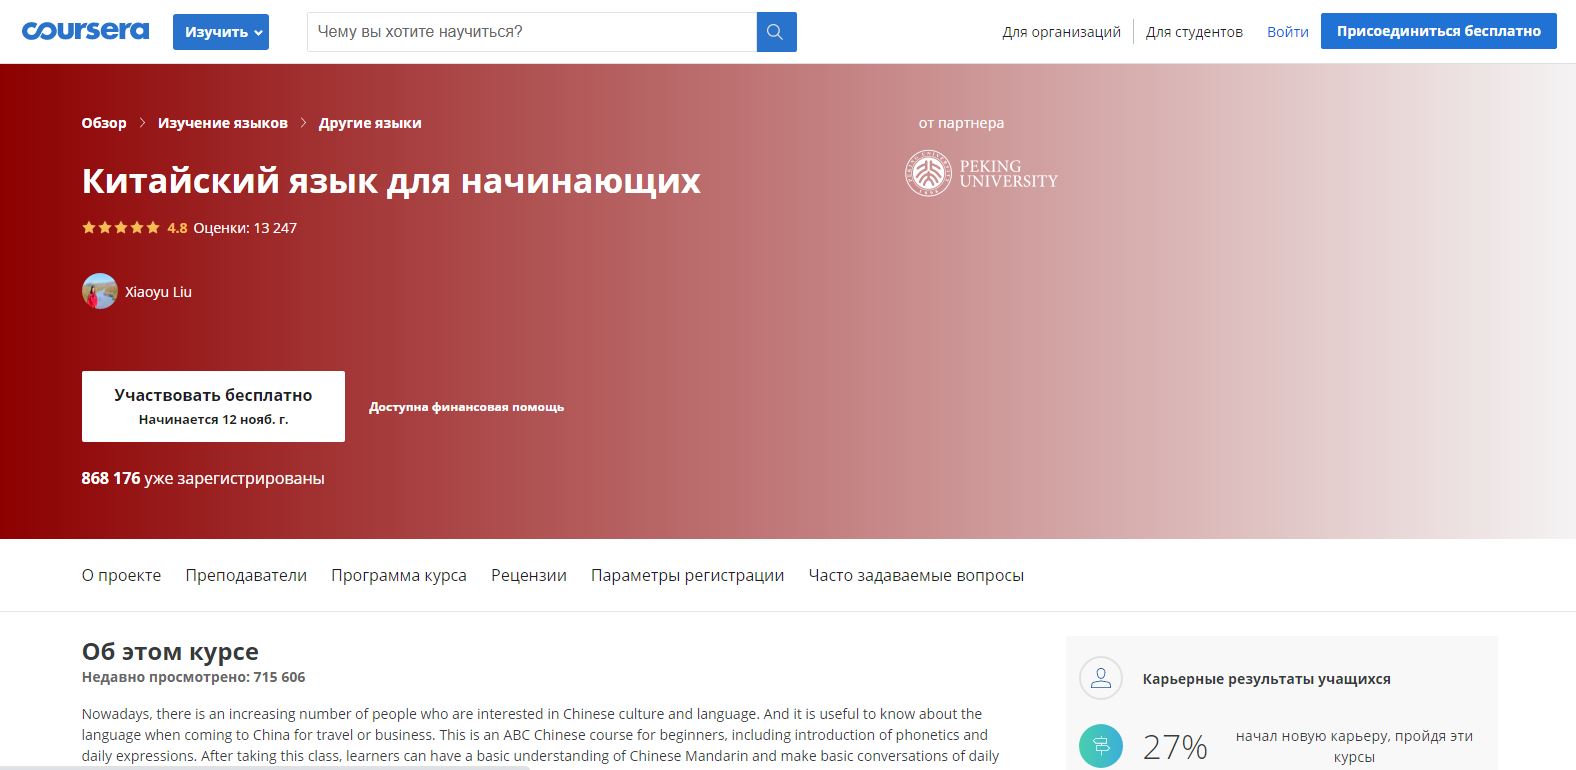 Обзор бесплатных онлайн-курсов Coursera полностью на русском языке или с русскими субтитрами